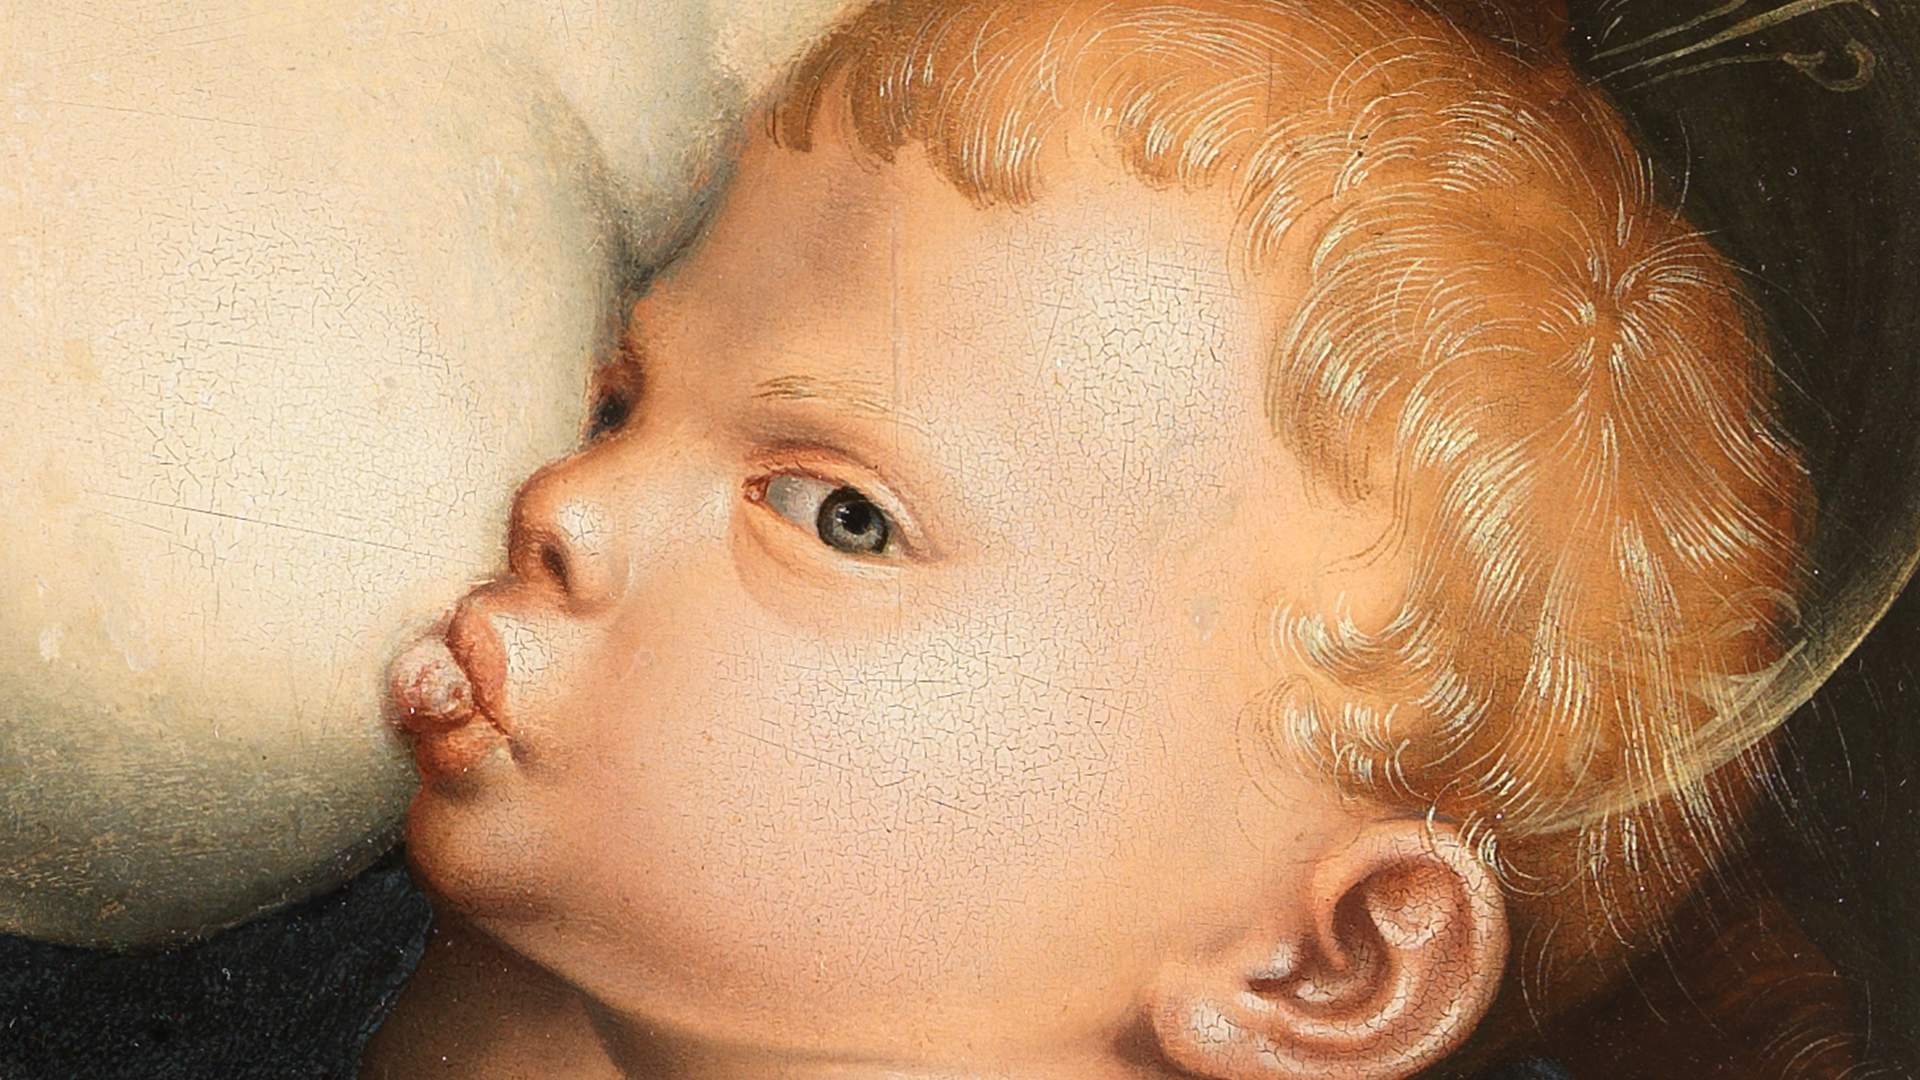 Detail des Kindes aus Hans Baldung Griens Gemälde Maria mit Kind und Papageien. Es zeigt die nackte Brust einer Frau. An dem Nippel der Frau saugt ein Kind.